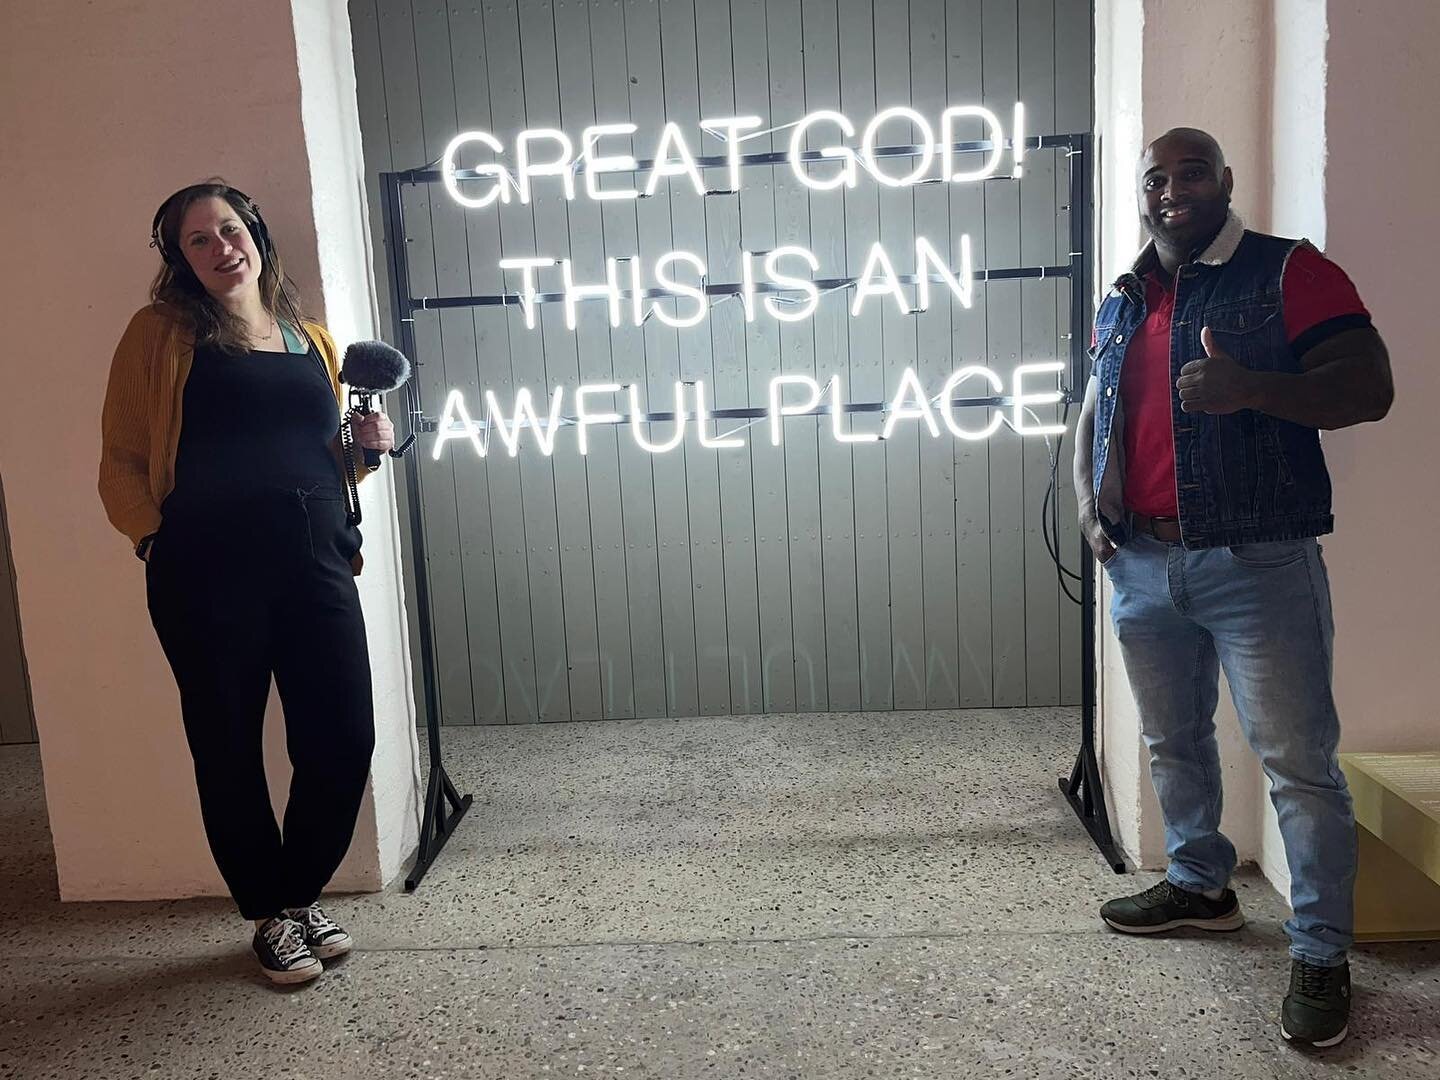 Wanneer ben je werkelijk vrij? Vandaag had ik afgesproken met Neil om de tentoonstelling Exodus van @bijbelsmuseum en @buitenplaatsdoornburgh te bekijken. Zijn leven heeft nogal wat overeenkomsten met dit thema namelijk. 

Neil is geboren in Suriname